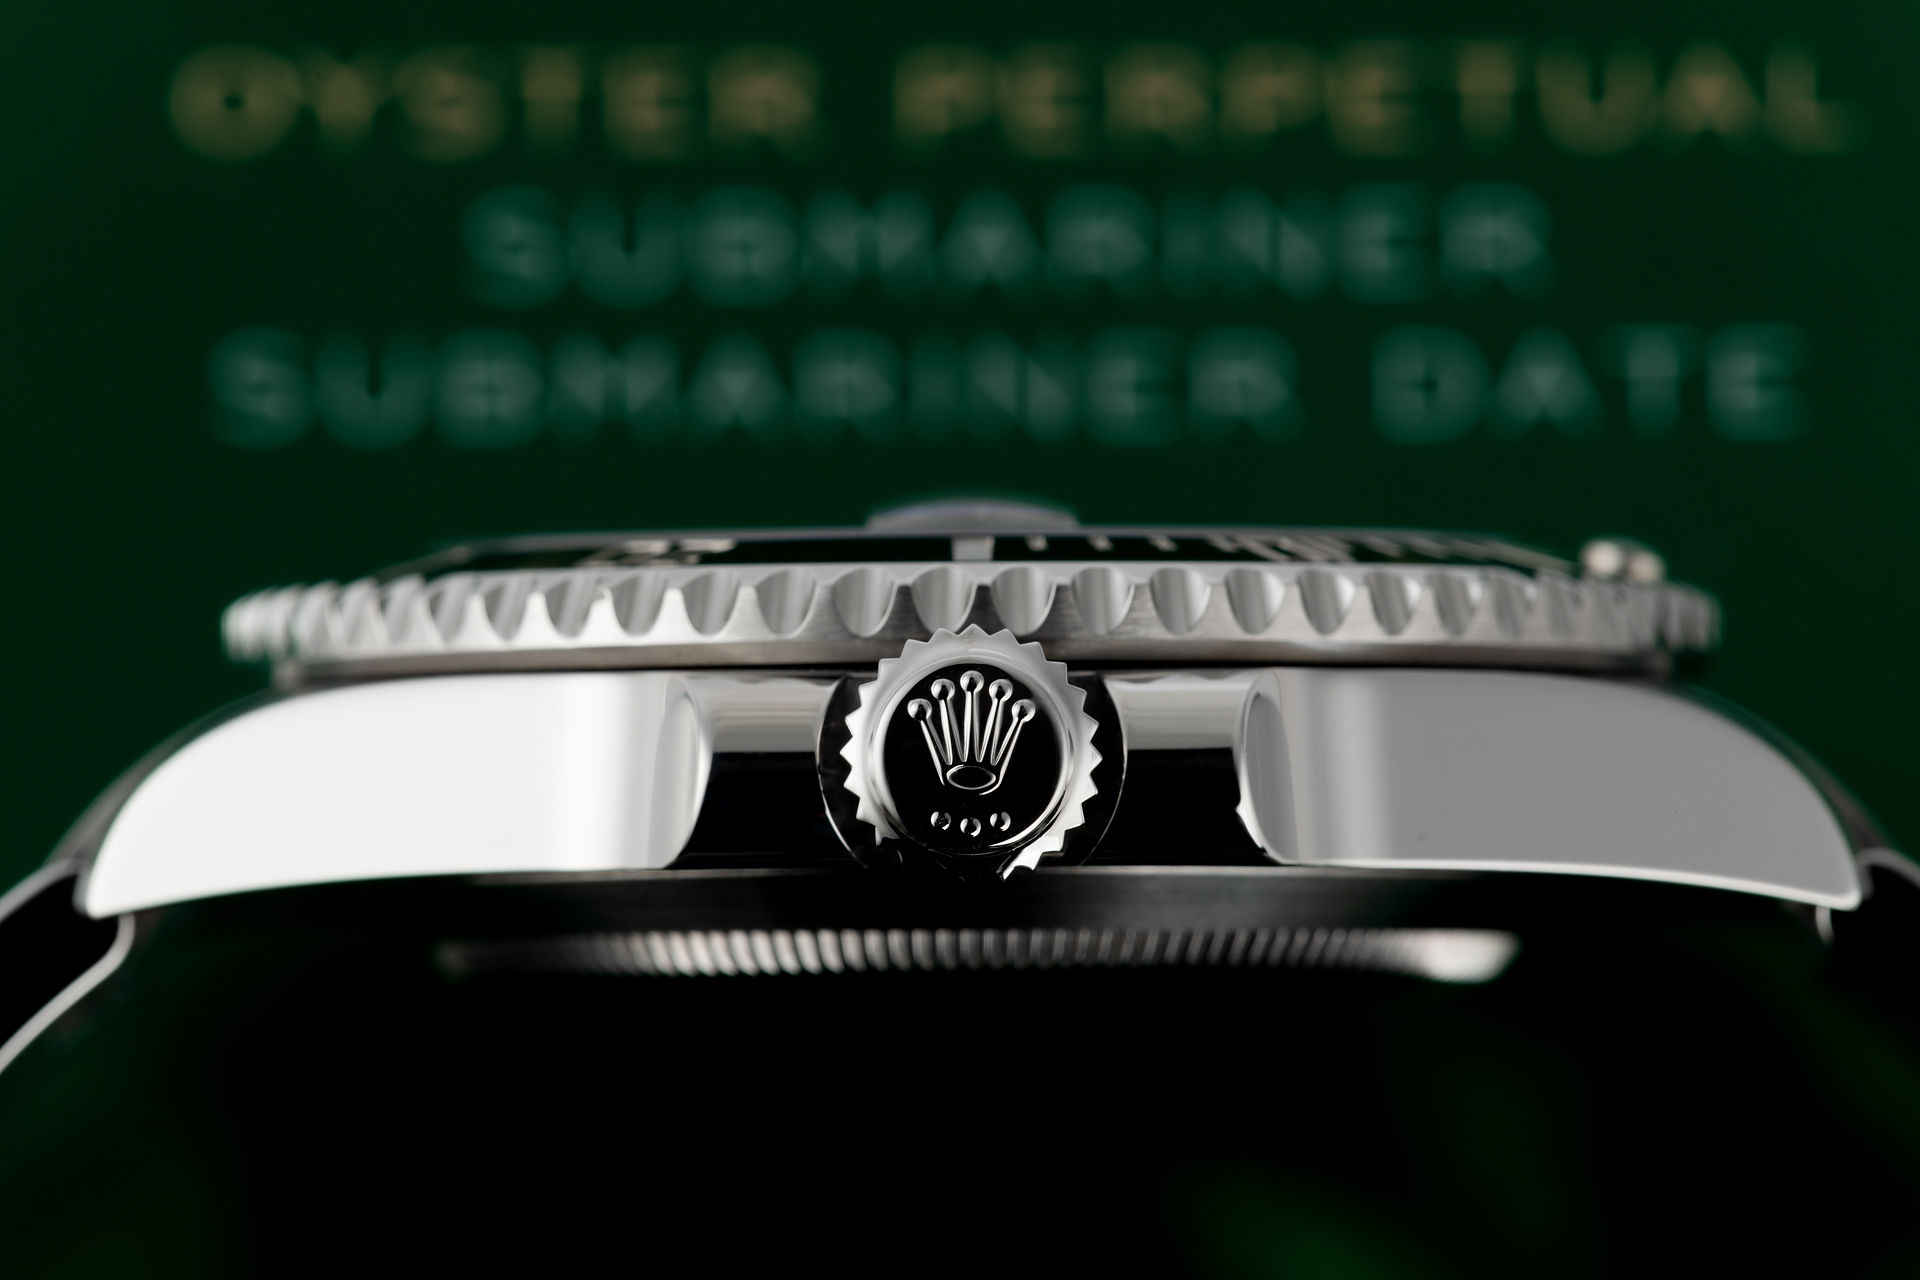 ref 116610LN | 5 Year Rolex Warranty  | Rolex Submariner Date